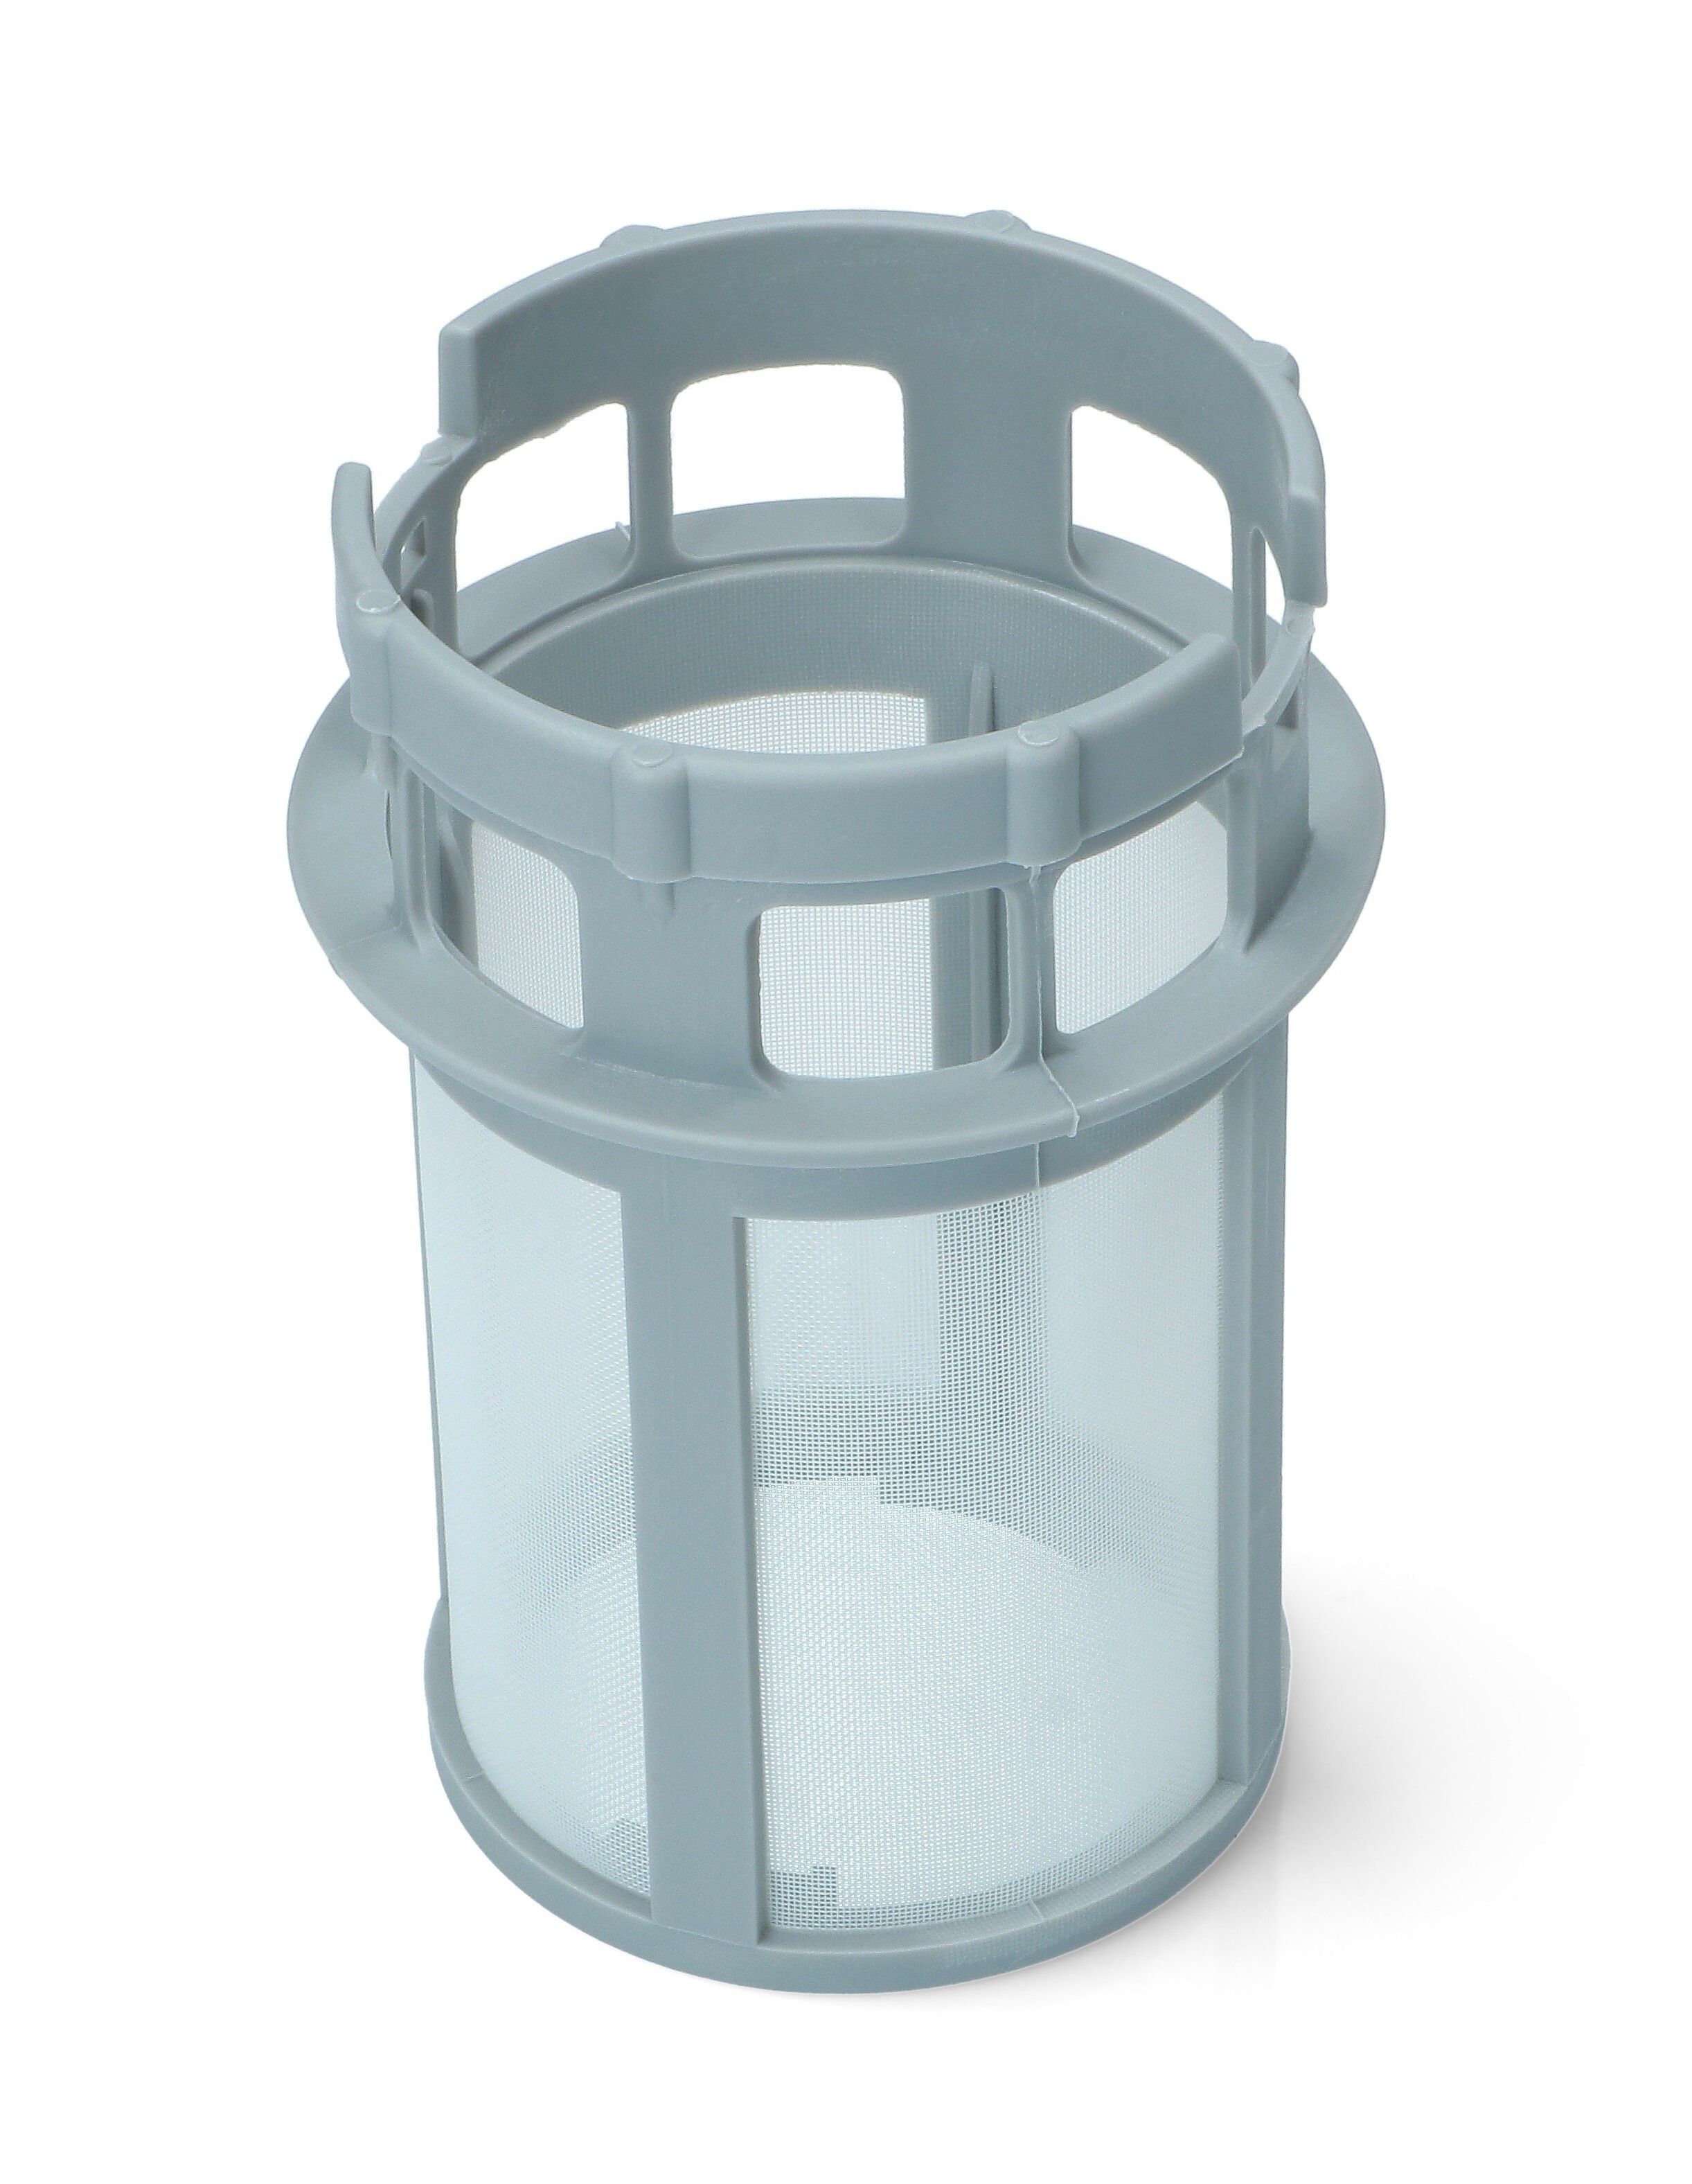 Сливной фильтр к посудомоечной машине Хотпоинт Аристон (Hotpoint Ariston) Индезит (Indesit ароматизатор для посудомоечной машины topperr 3323